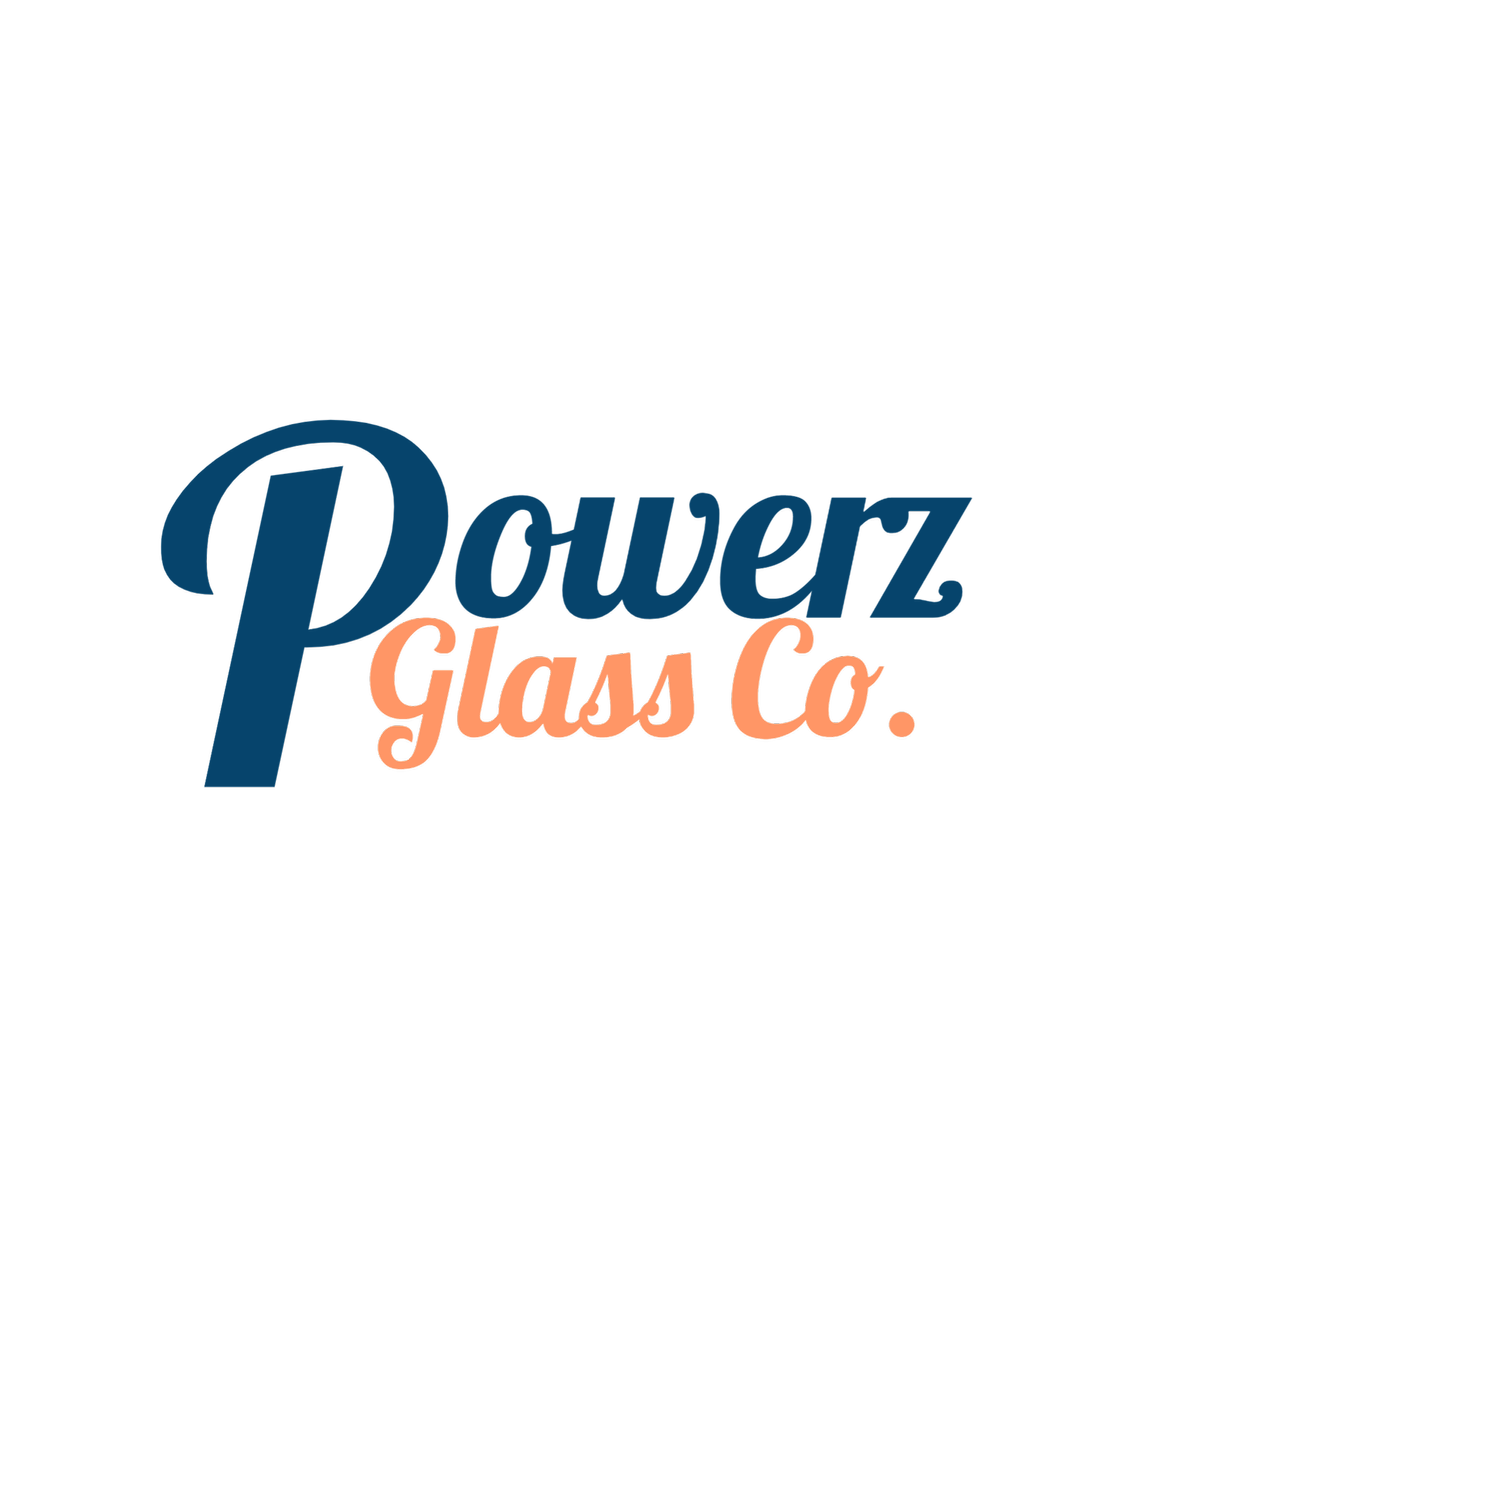 Powerz Glass Co